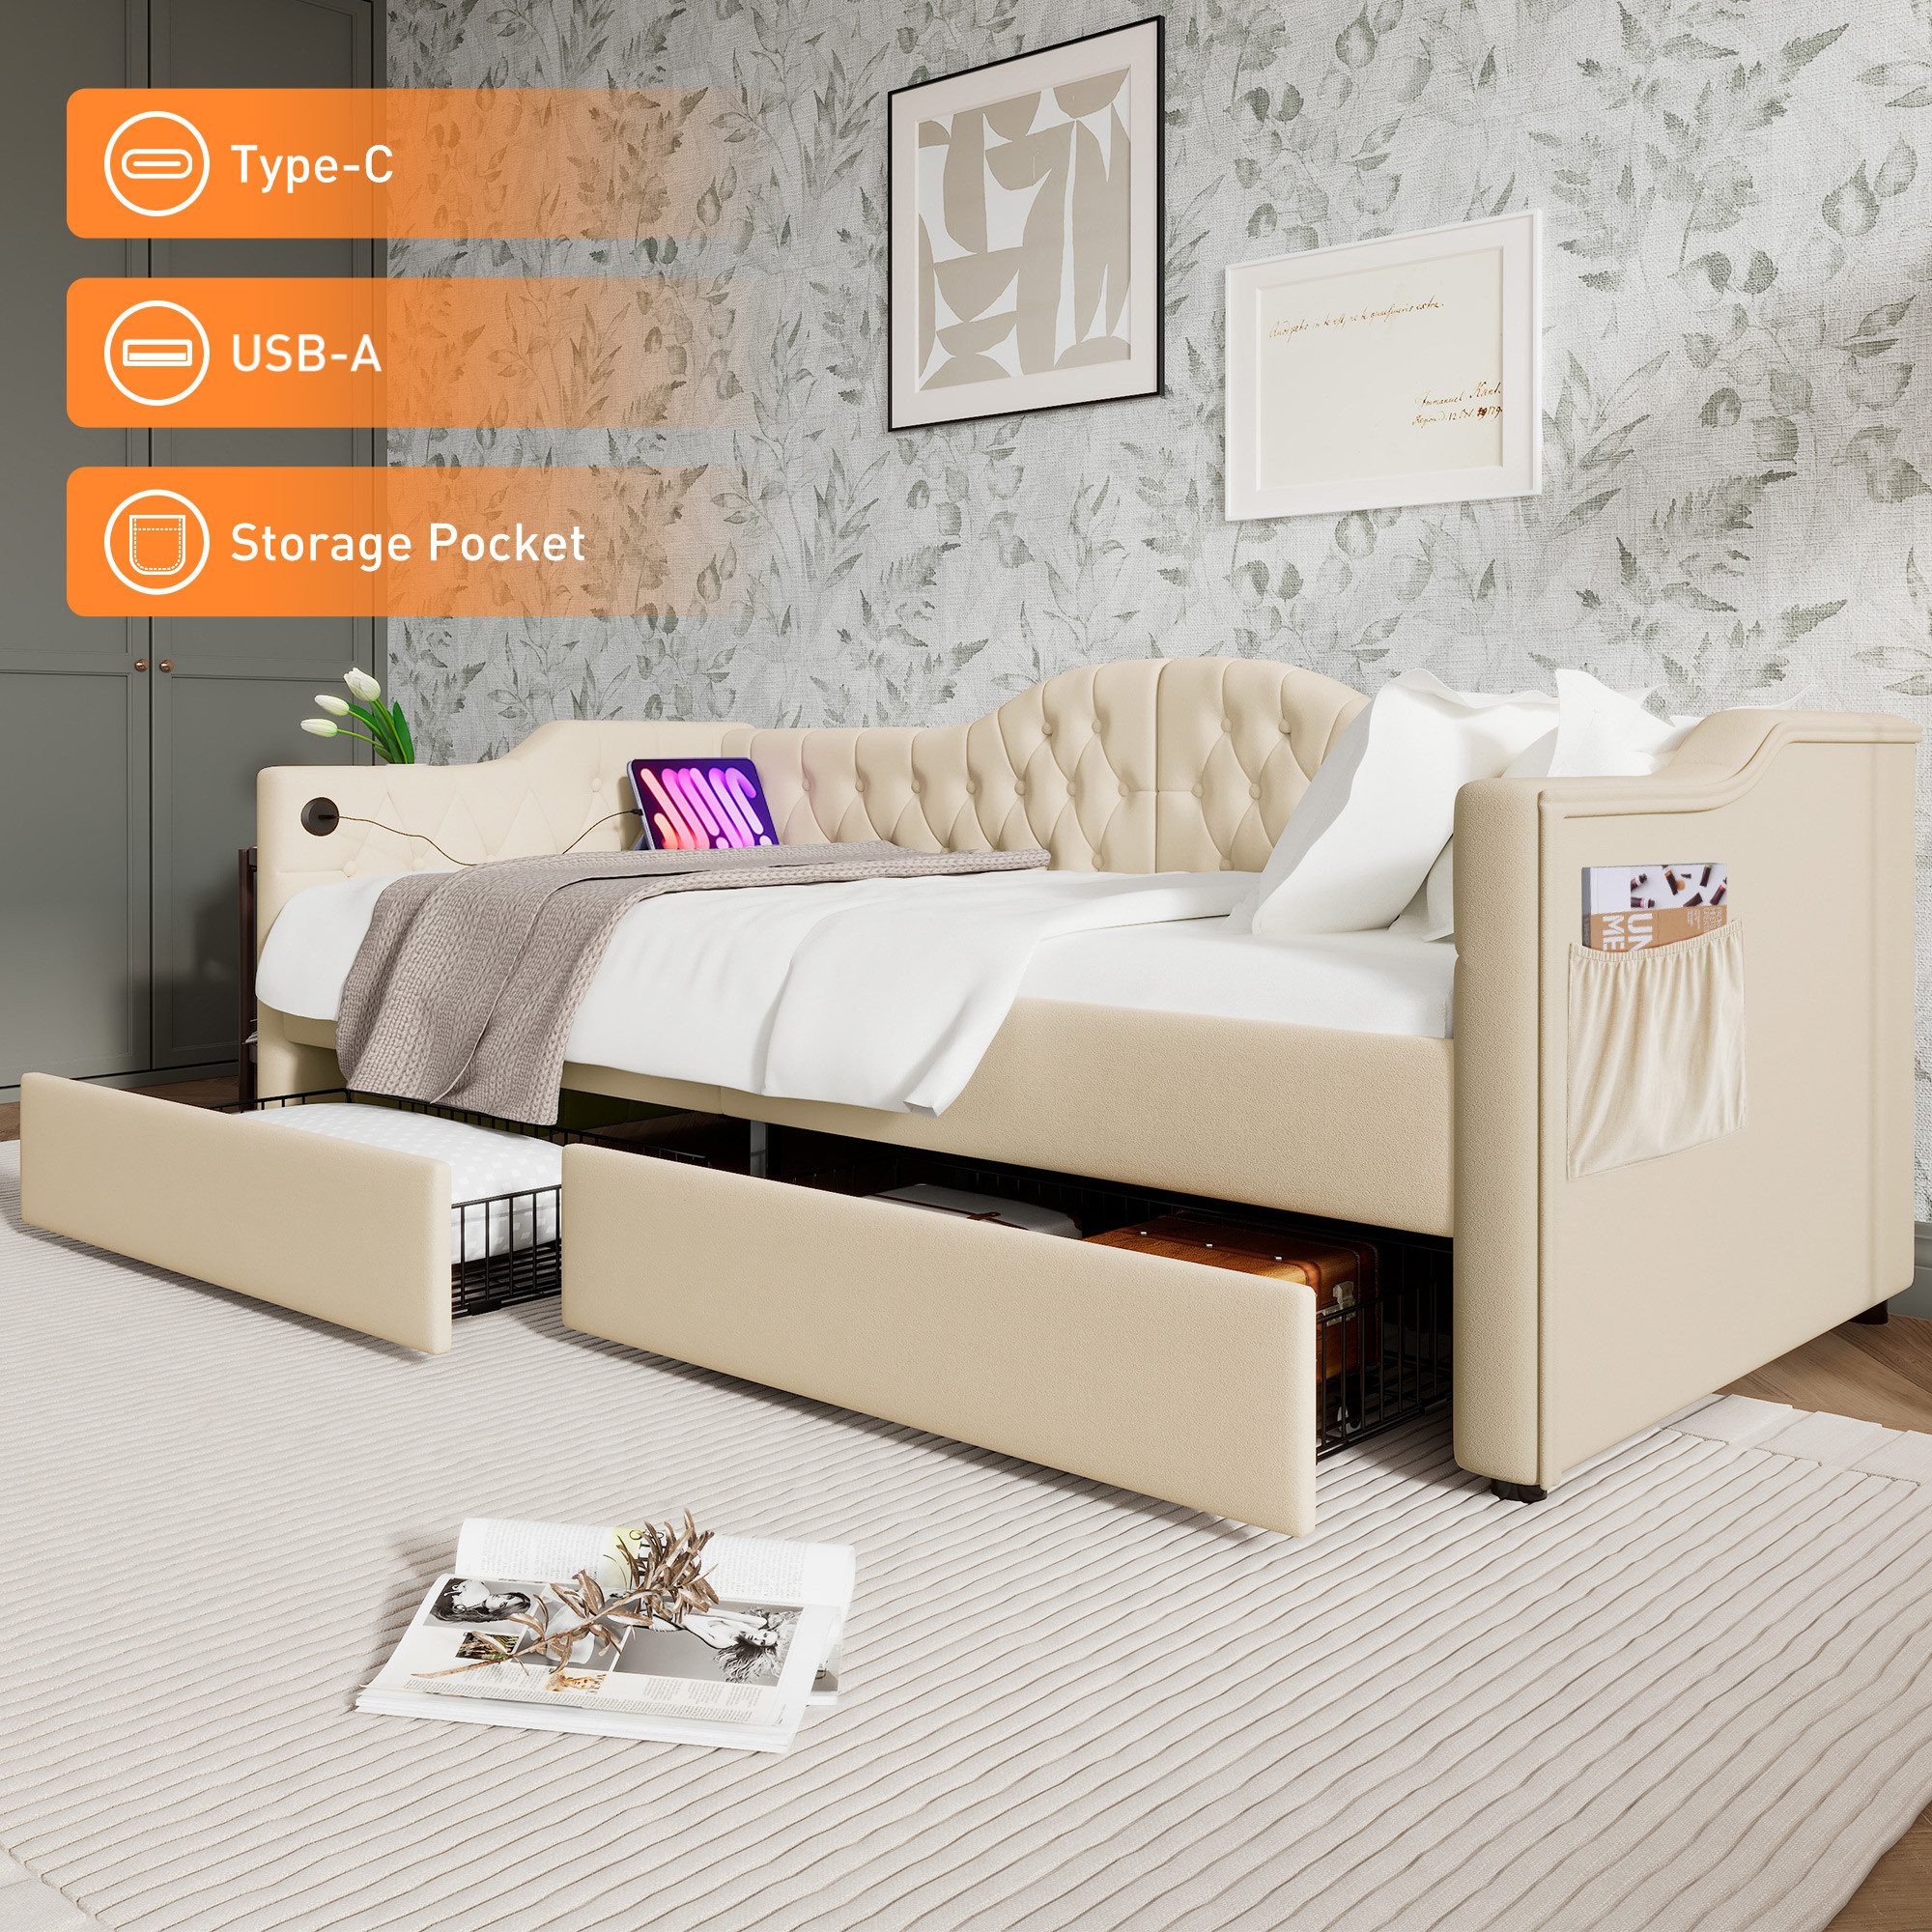 OKWISH Daybett Tagesbett Schlafsofa (90x200cm), mit USB Type C Ladefunktion und 2 Schubladen